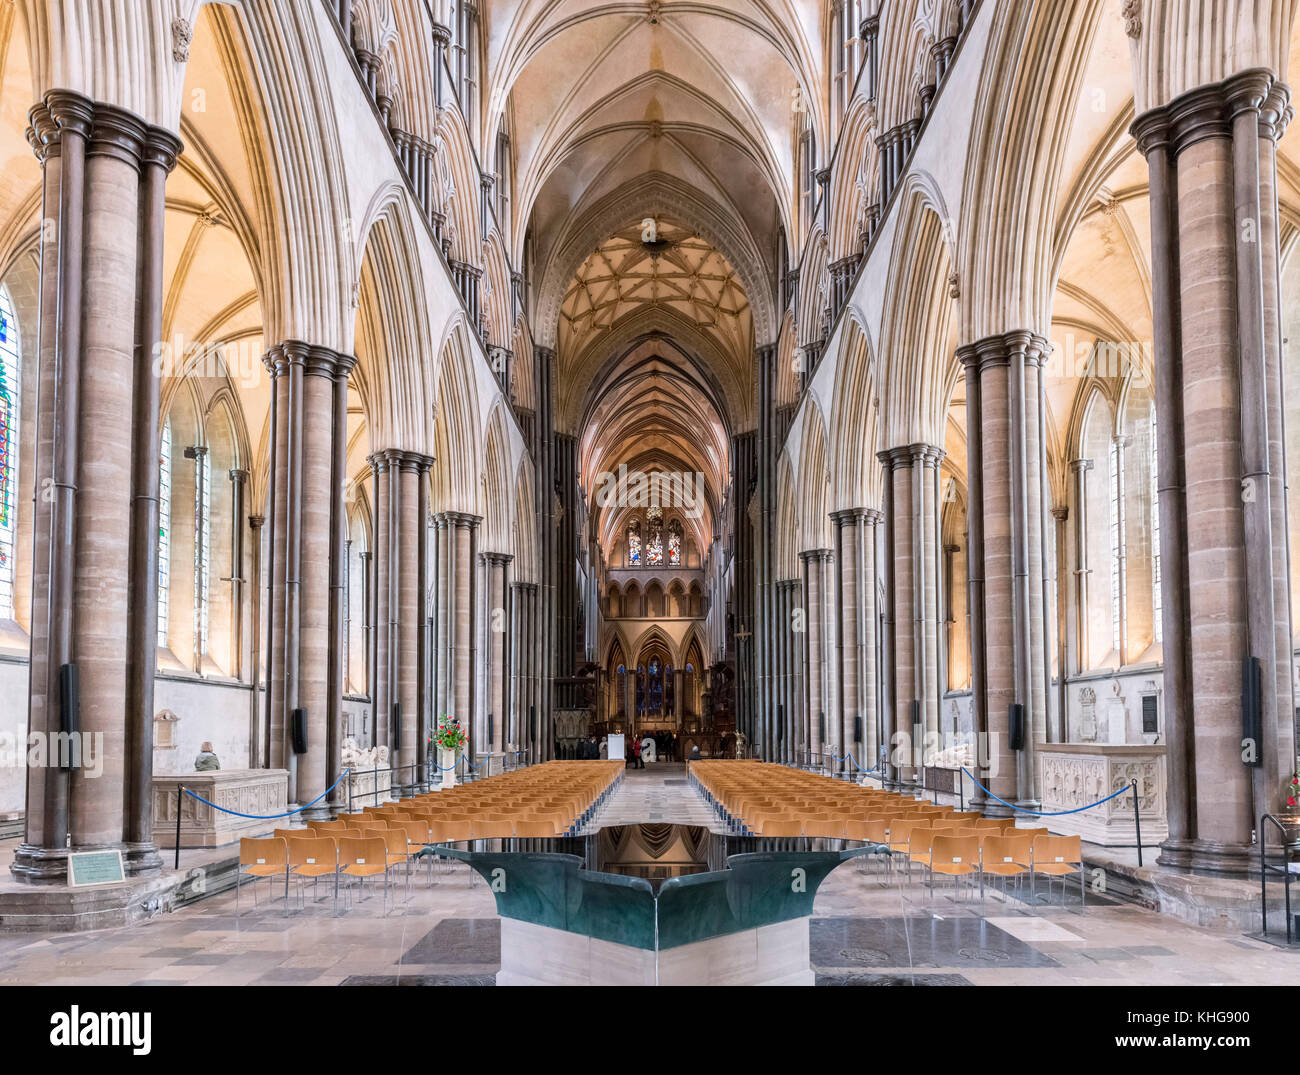 Nef de la cathédrale de Salisbury avec les fonts baptismaux de l'avant-plan, Salisbury, Wiltshire, Angleterre, Royaume-Uni Banque D'Images